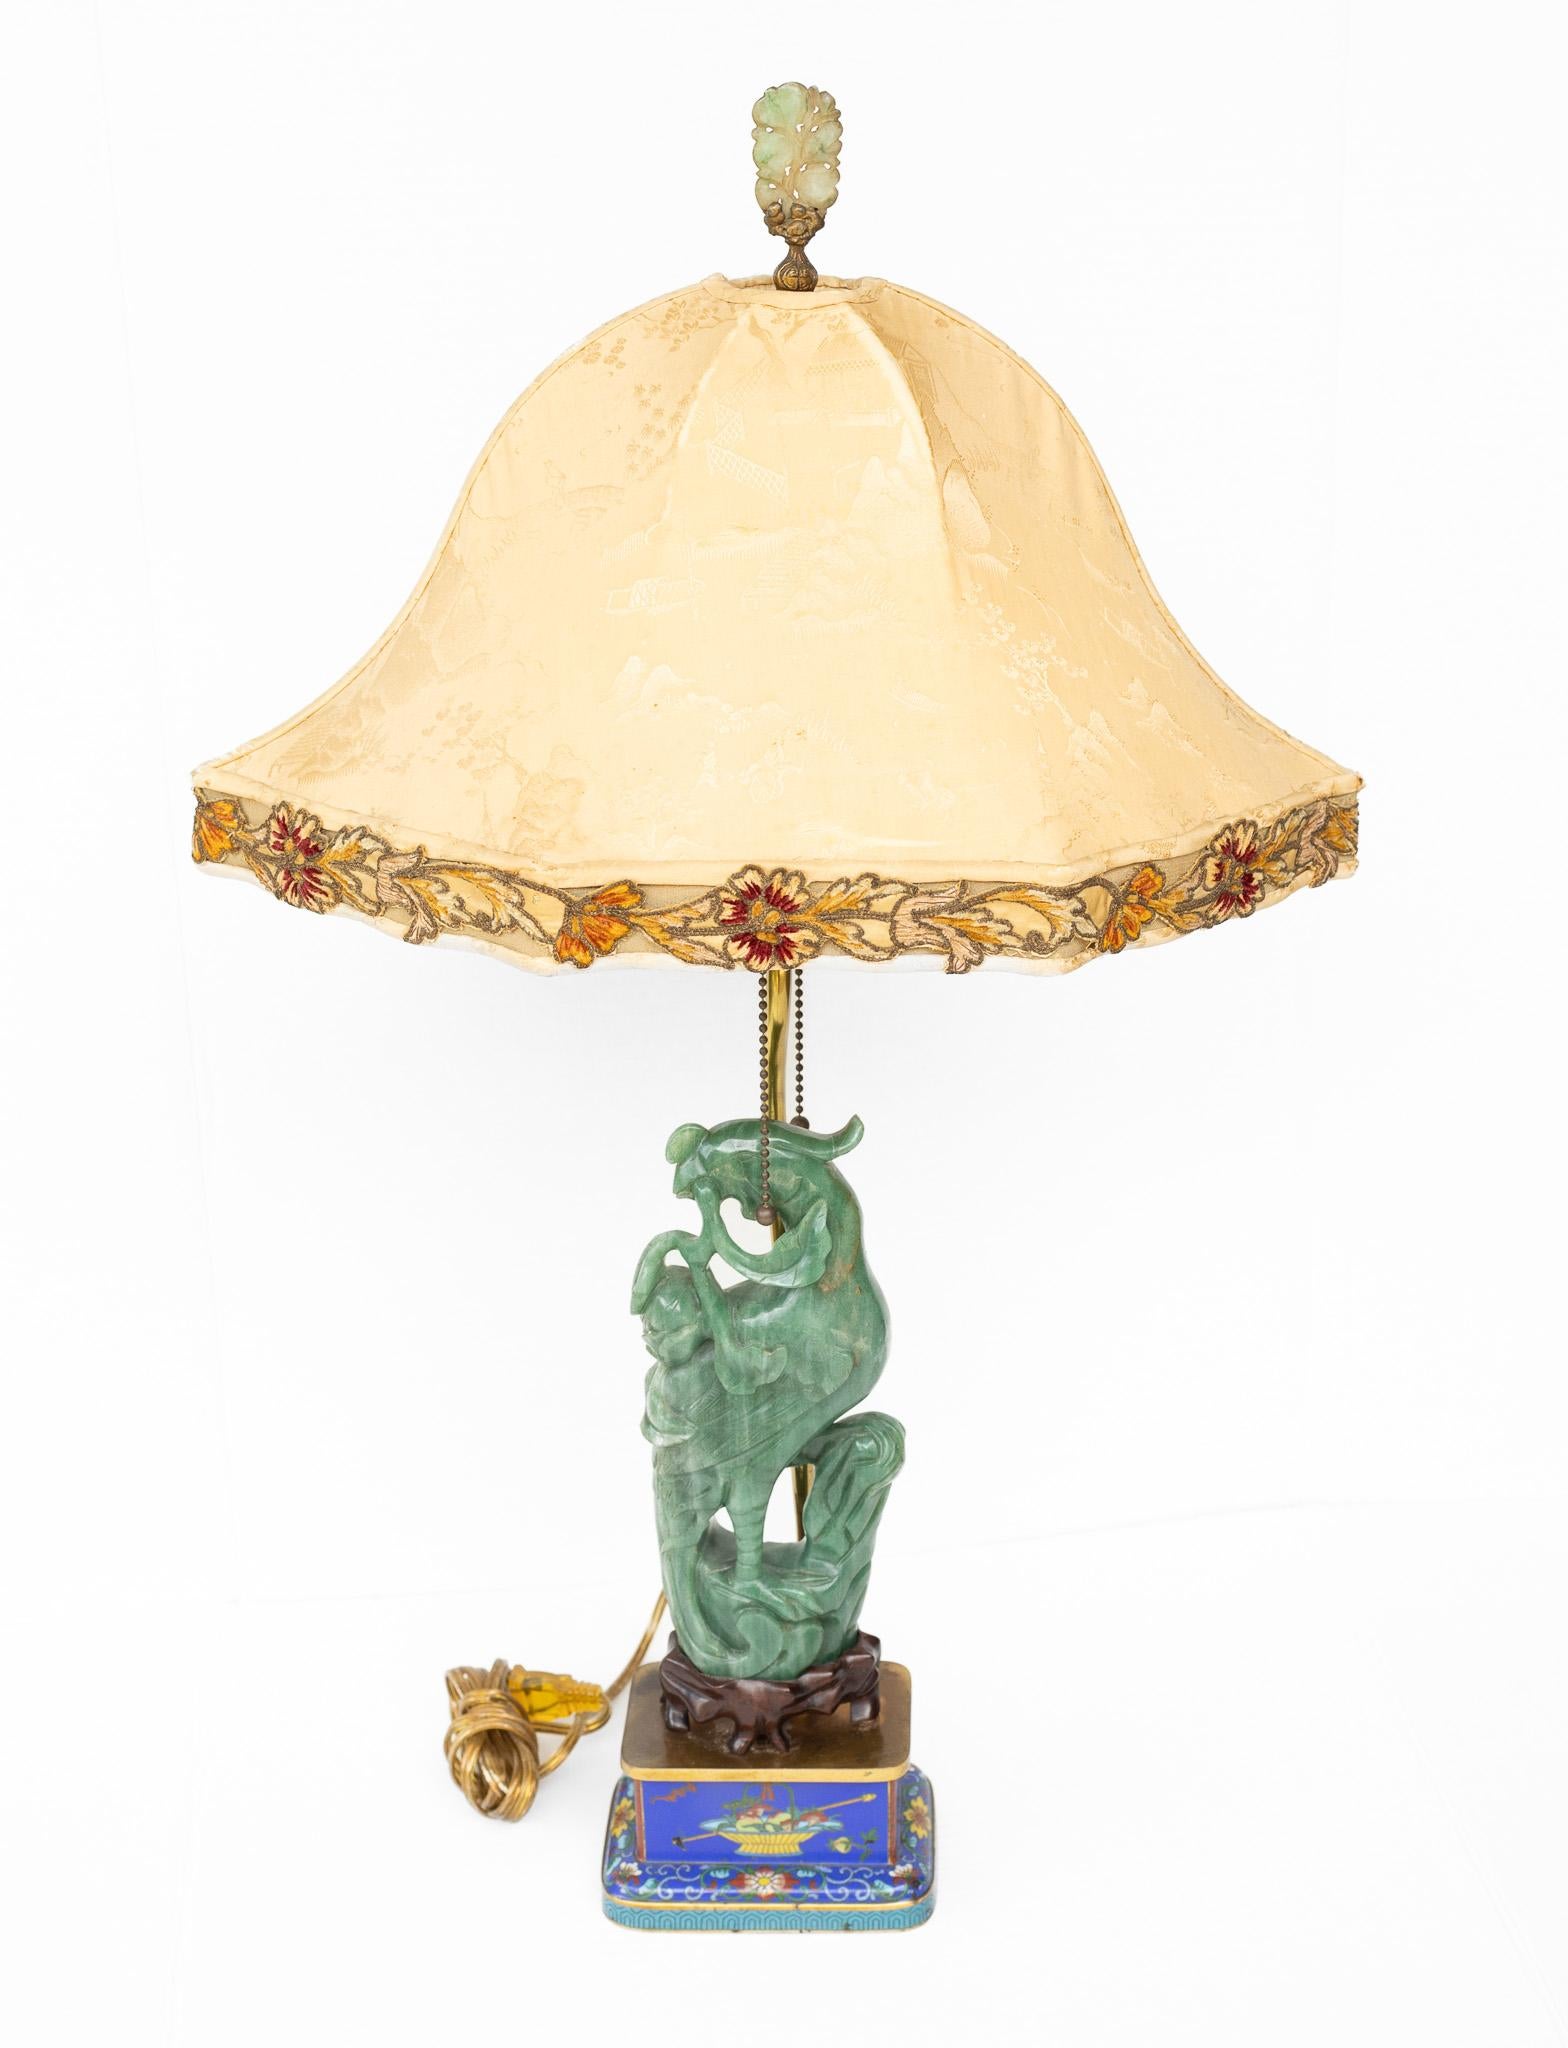 Paire de lampes chinoises avec Phoenix en aventurine sculptée, épis de faîtage en jade et cloisonné. - Sculpture de Unknown